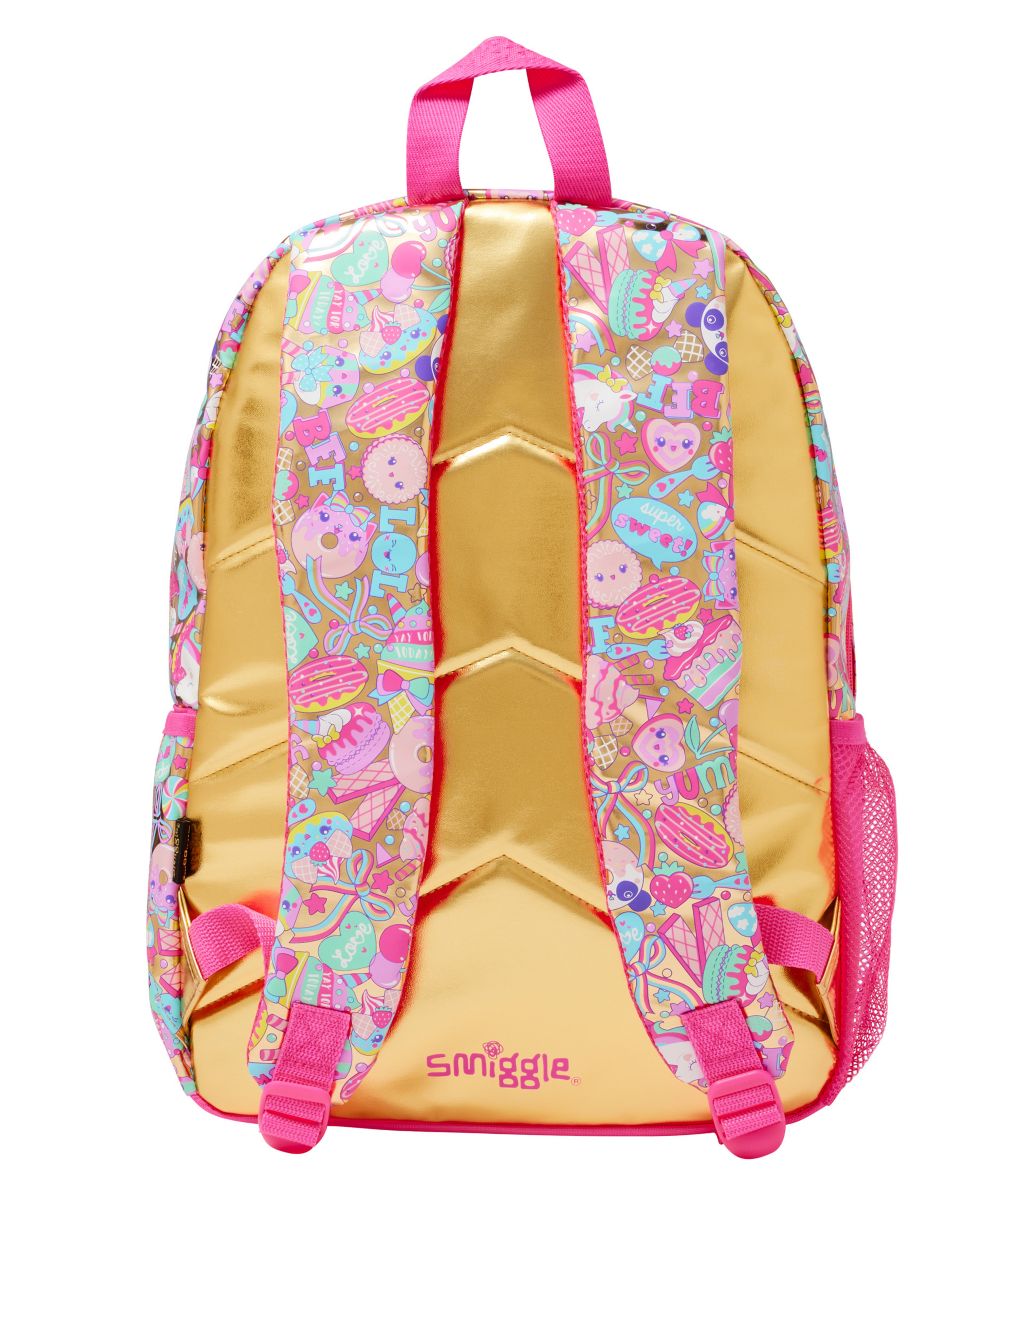 Kids' Patterned Backpack image 3